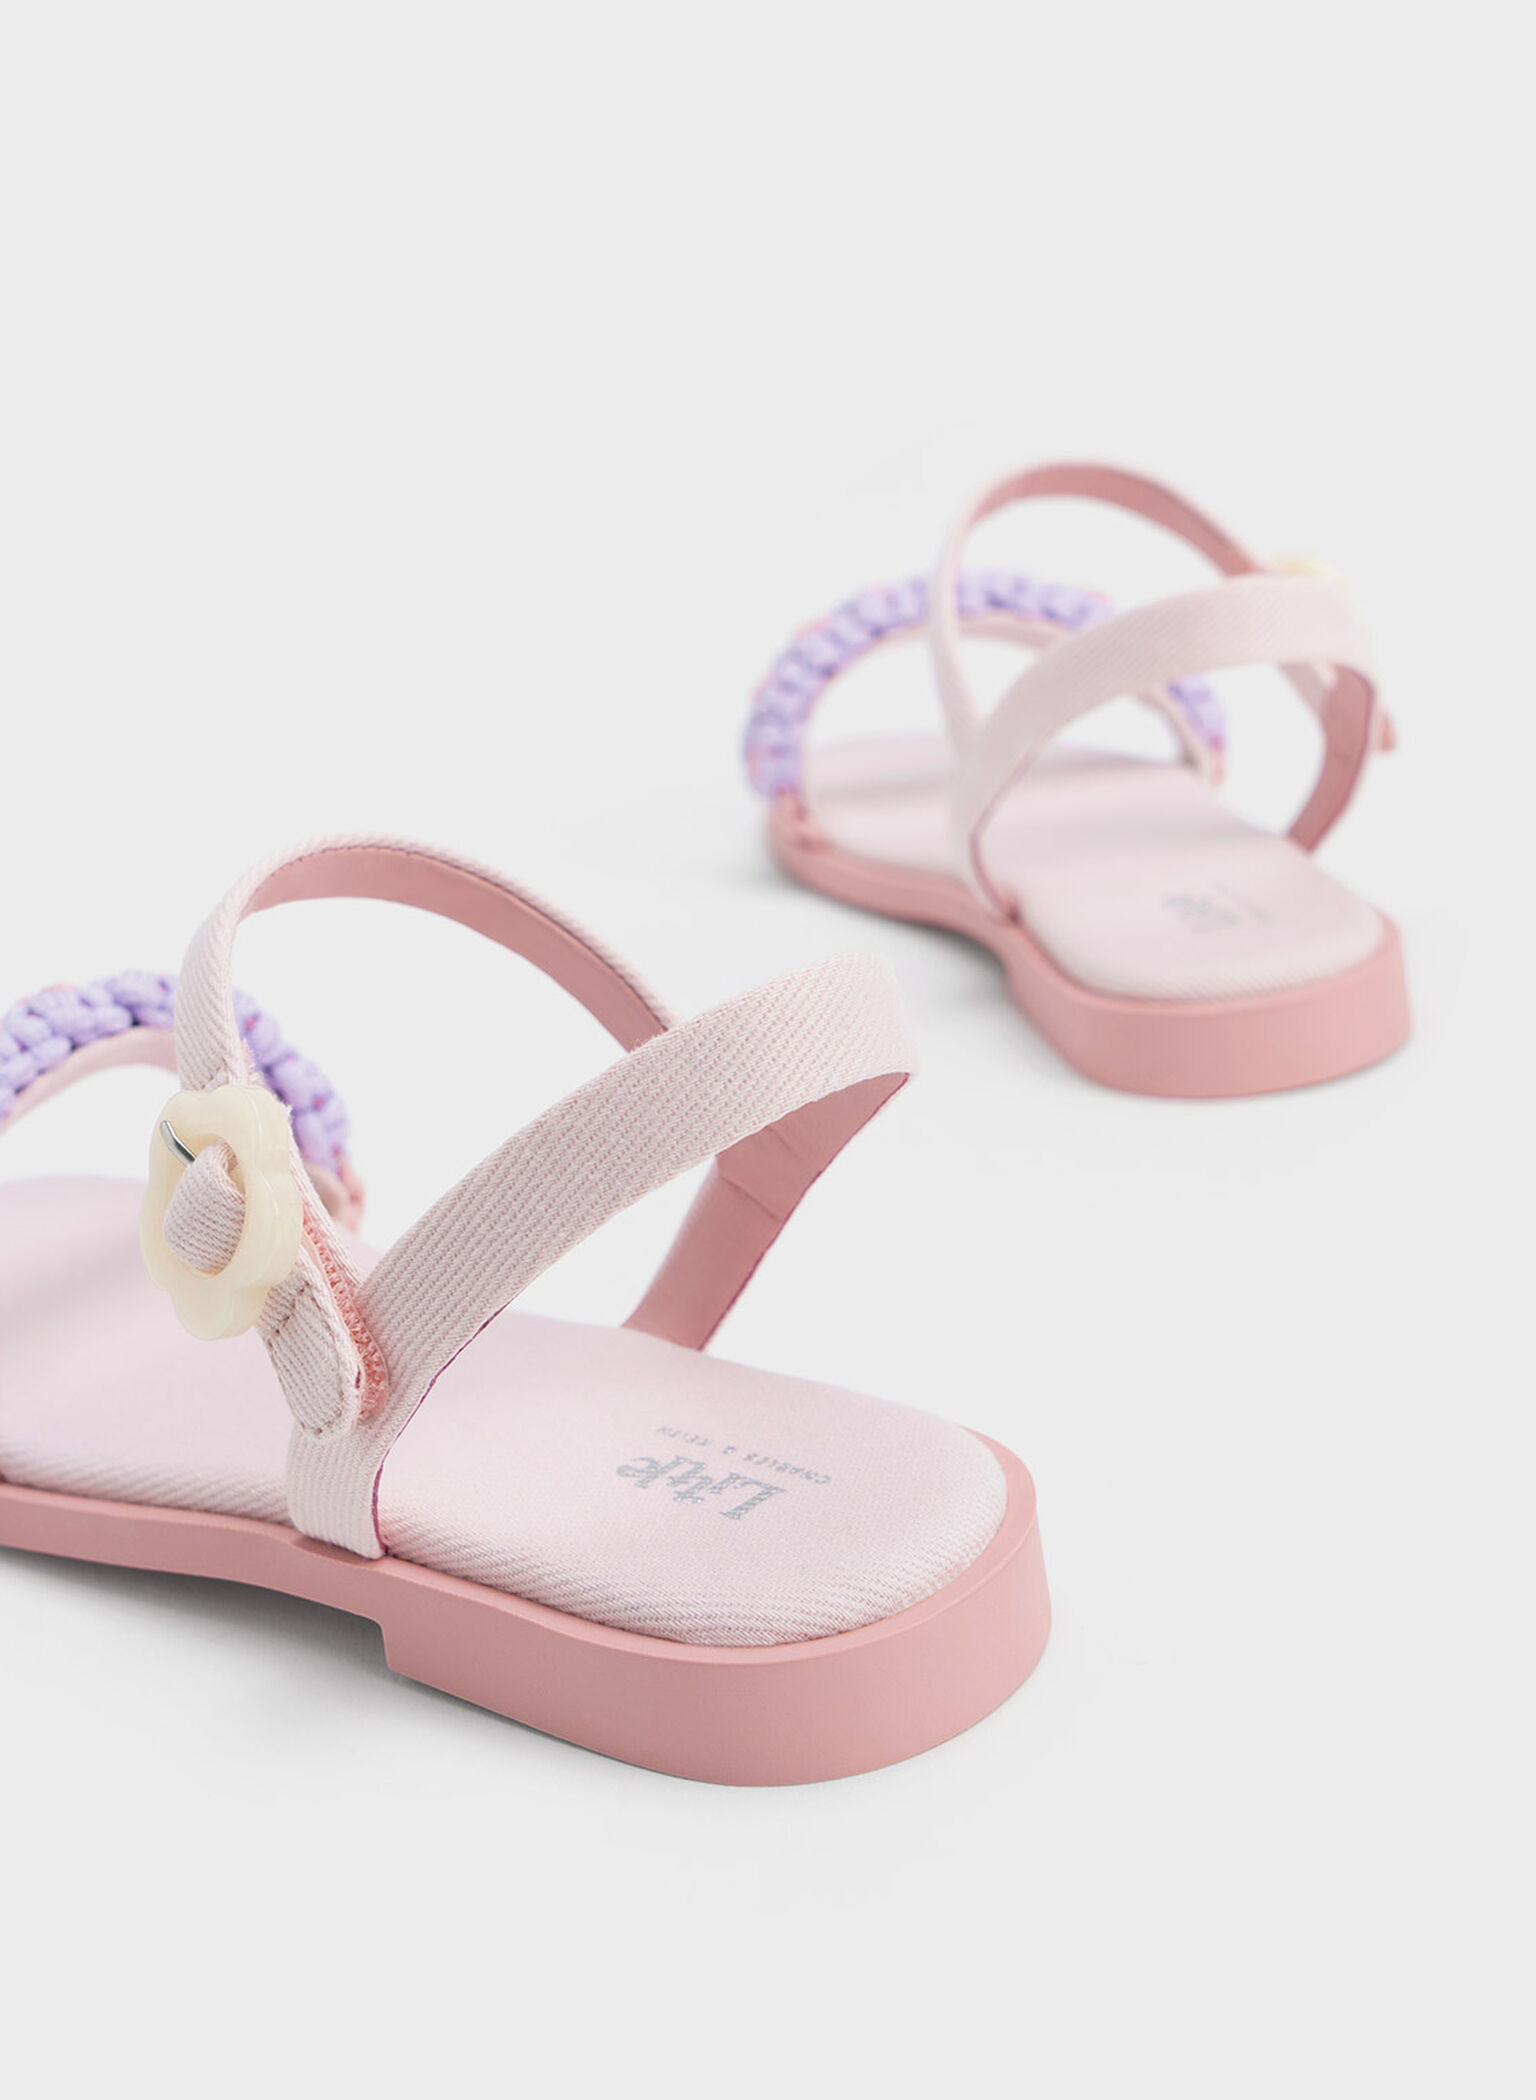 Girls' Floral Denim Sandals, Pink, hi-res